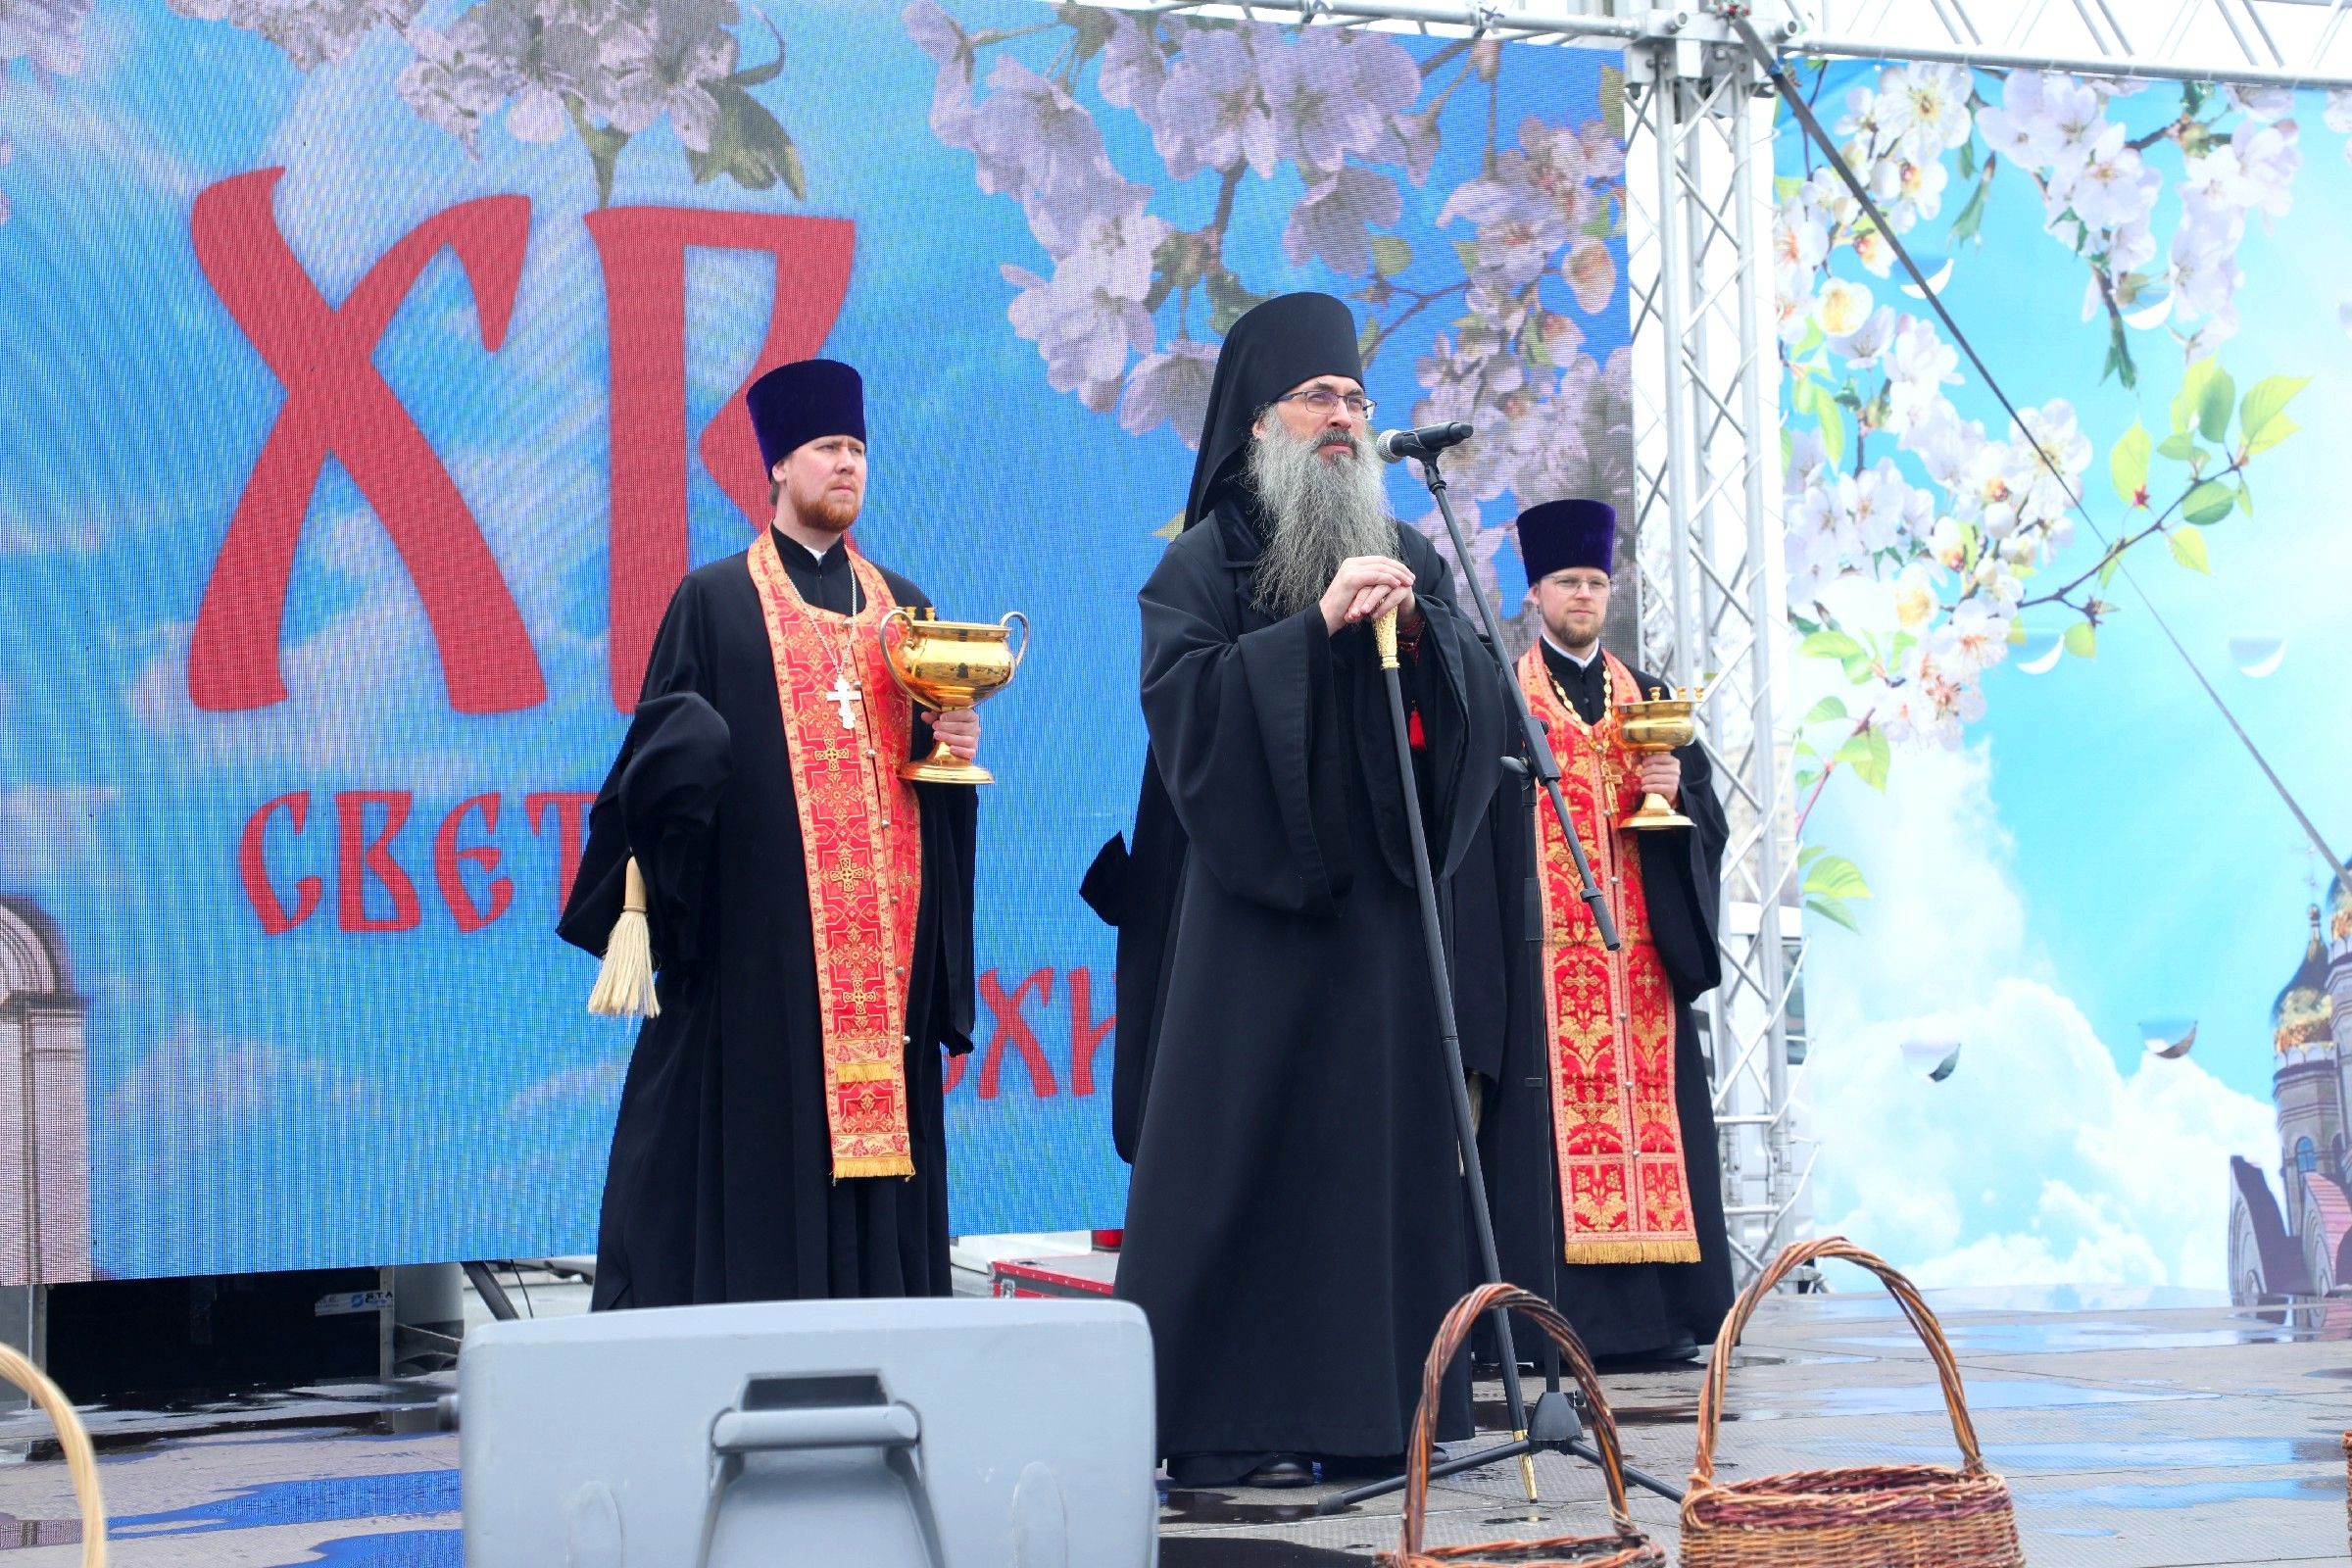 Епископ Уссурийский Иннокентий выступил с Пасхальным поздравлением на центральной площади